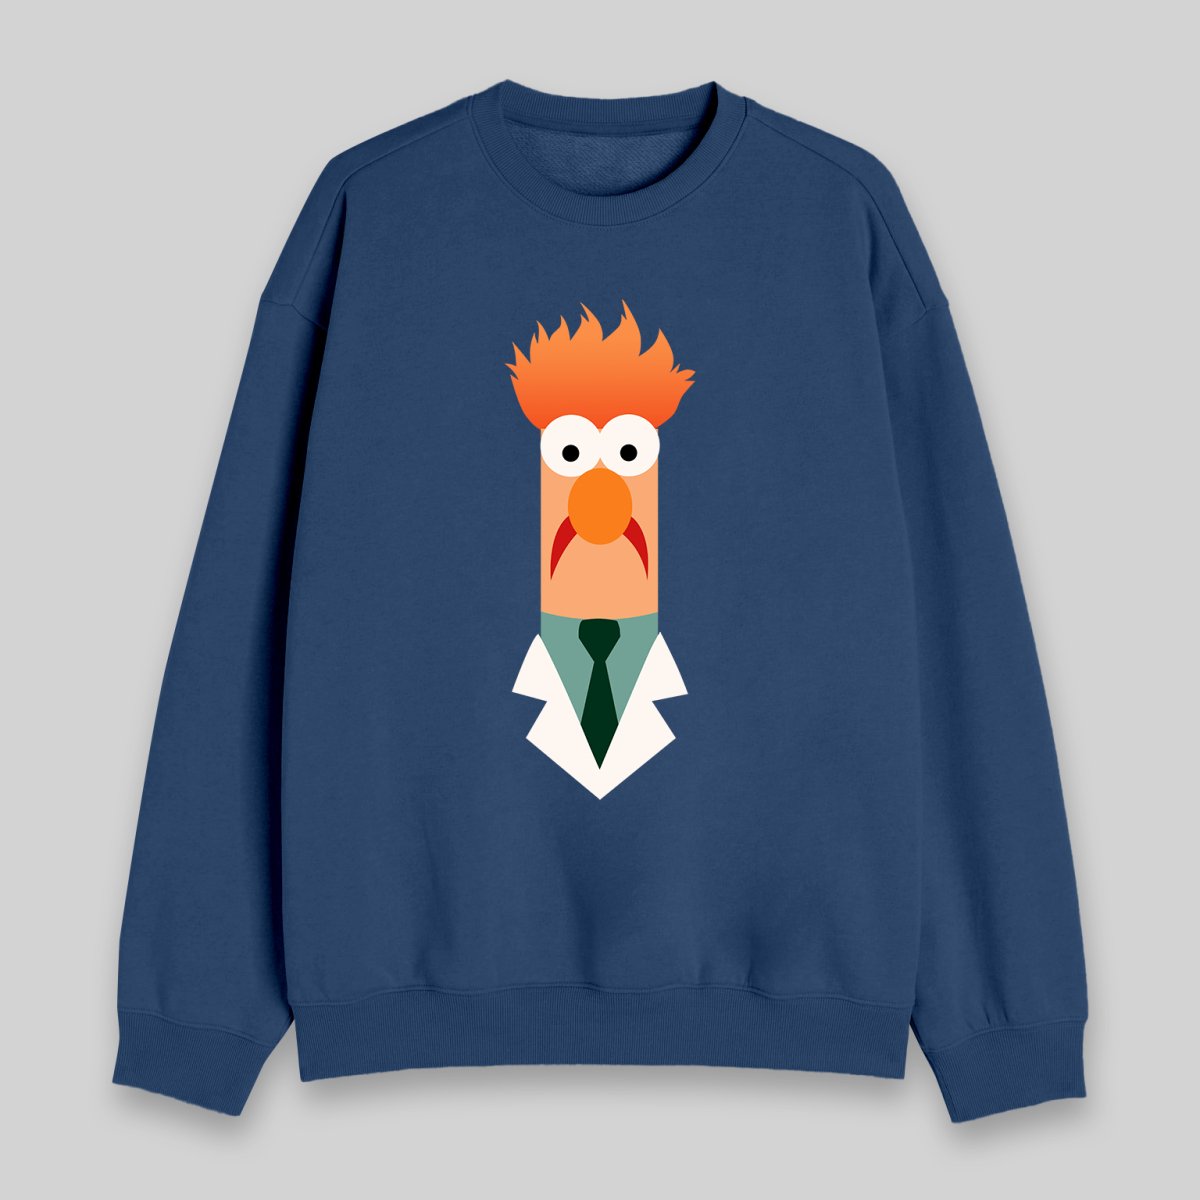 Beaker Sweatshirt - Geeksoutfit